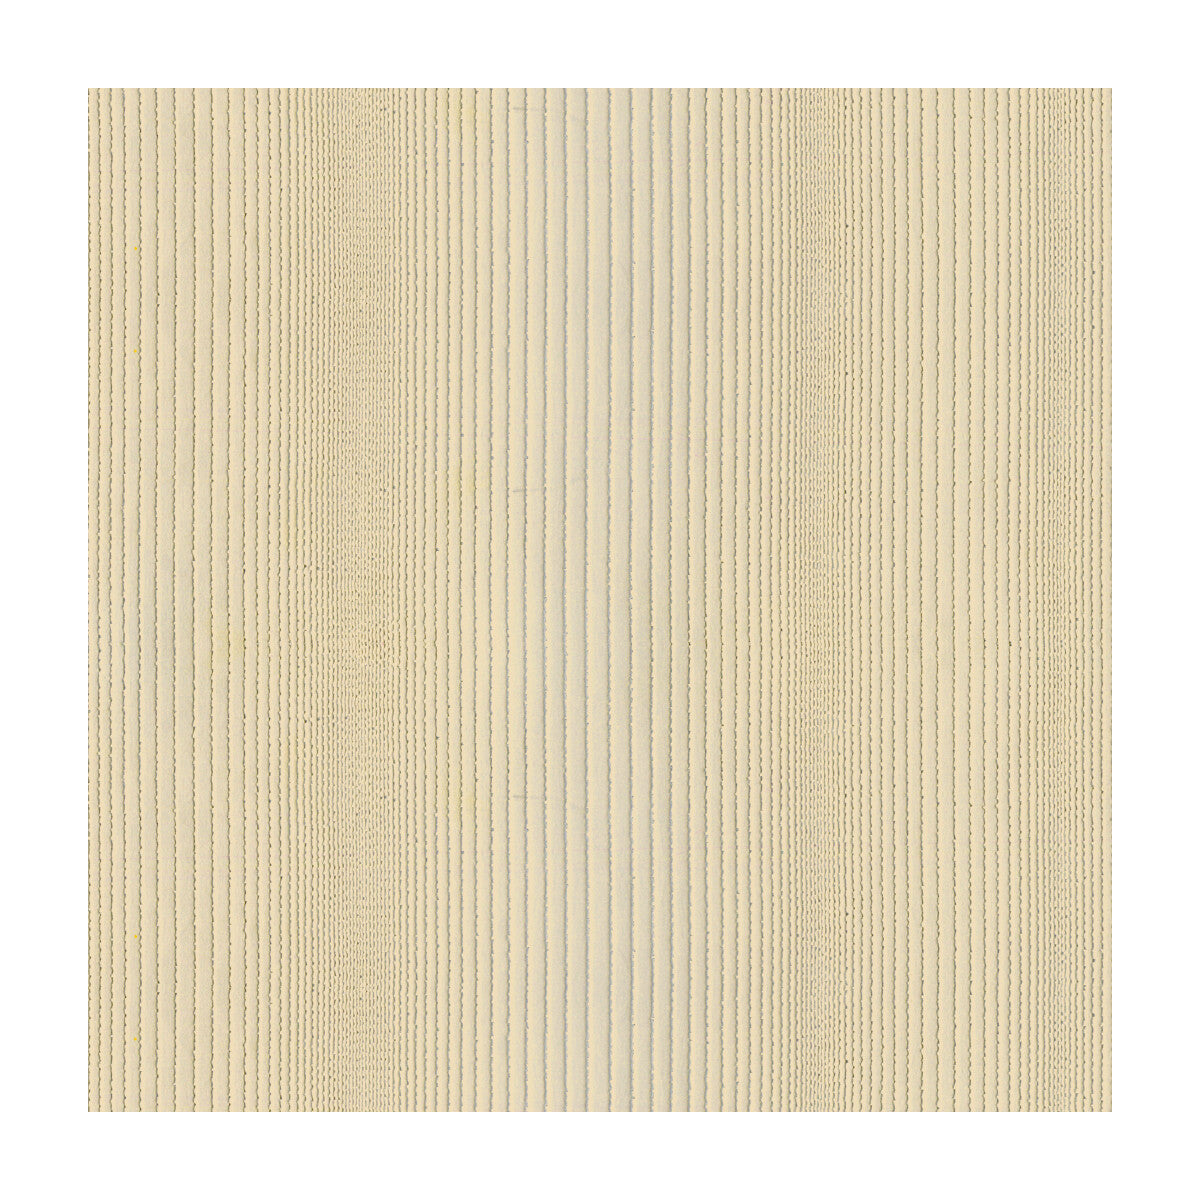 Kravet Basics fabric in 4120-16 color - pattern 4120.16.0 - by Kravet Basics